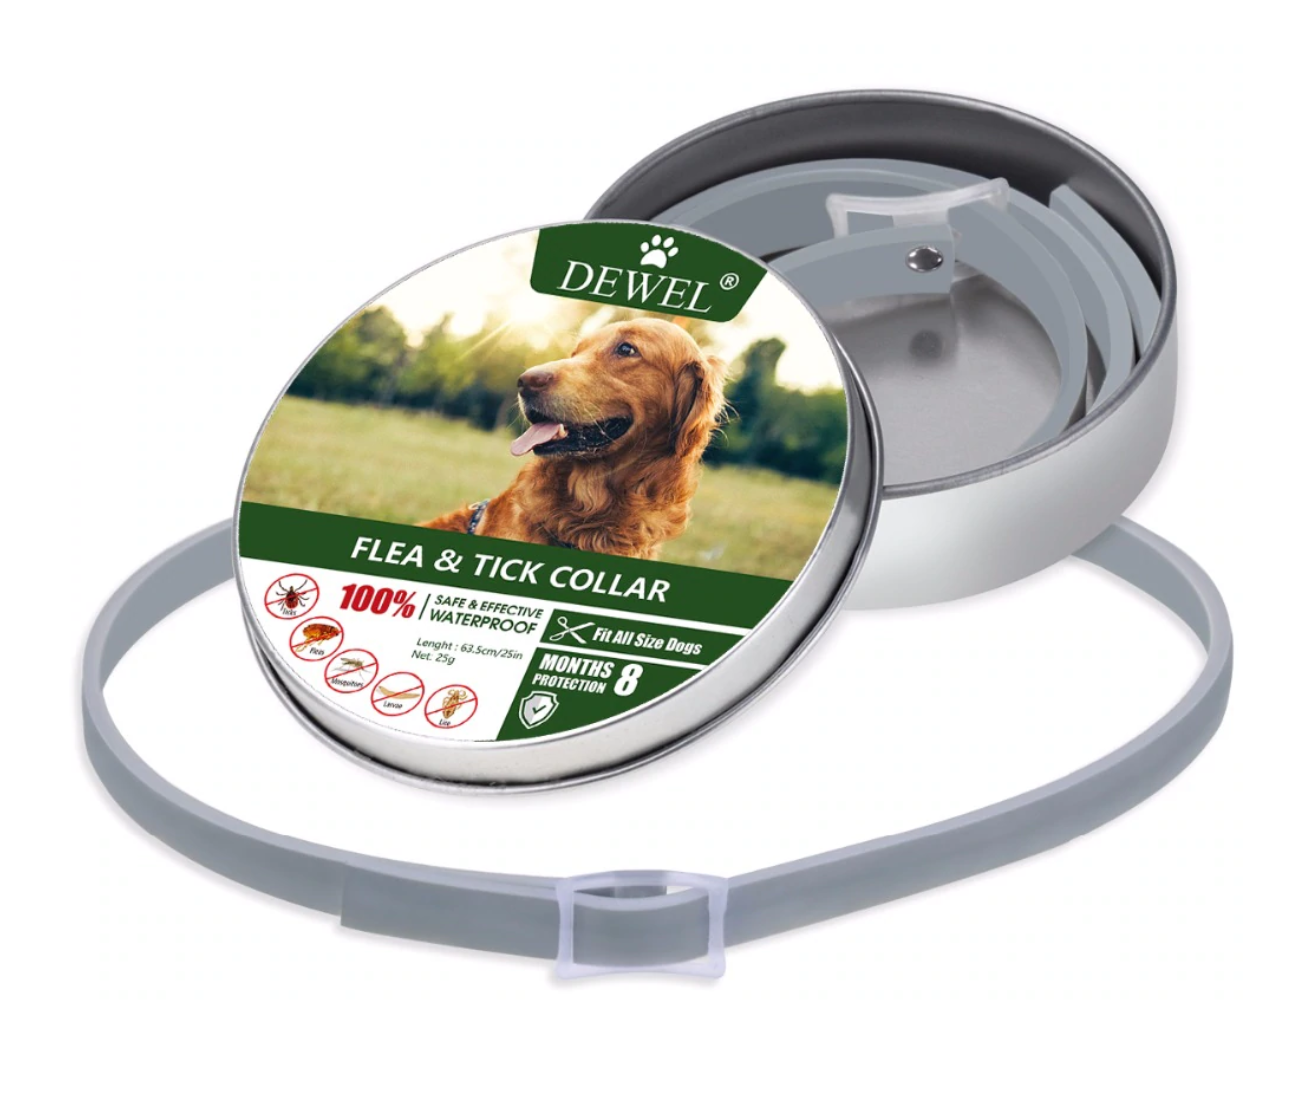 Dewel® Zecken- und Flohhalsband auf Pflanzenbasis für Hunde und Katzen | 50% RABATT